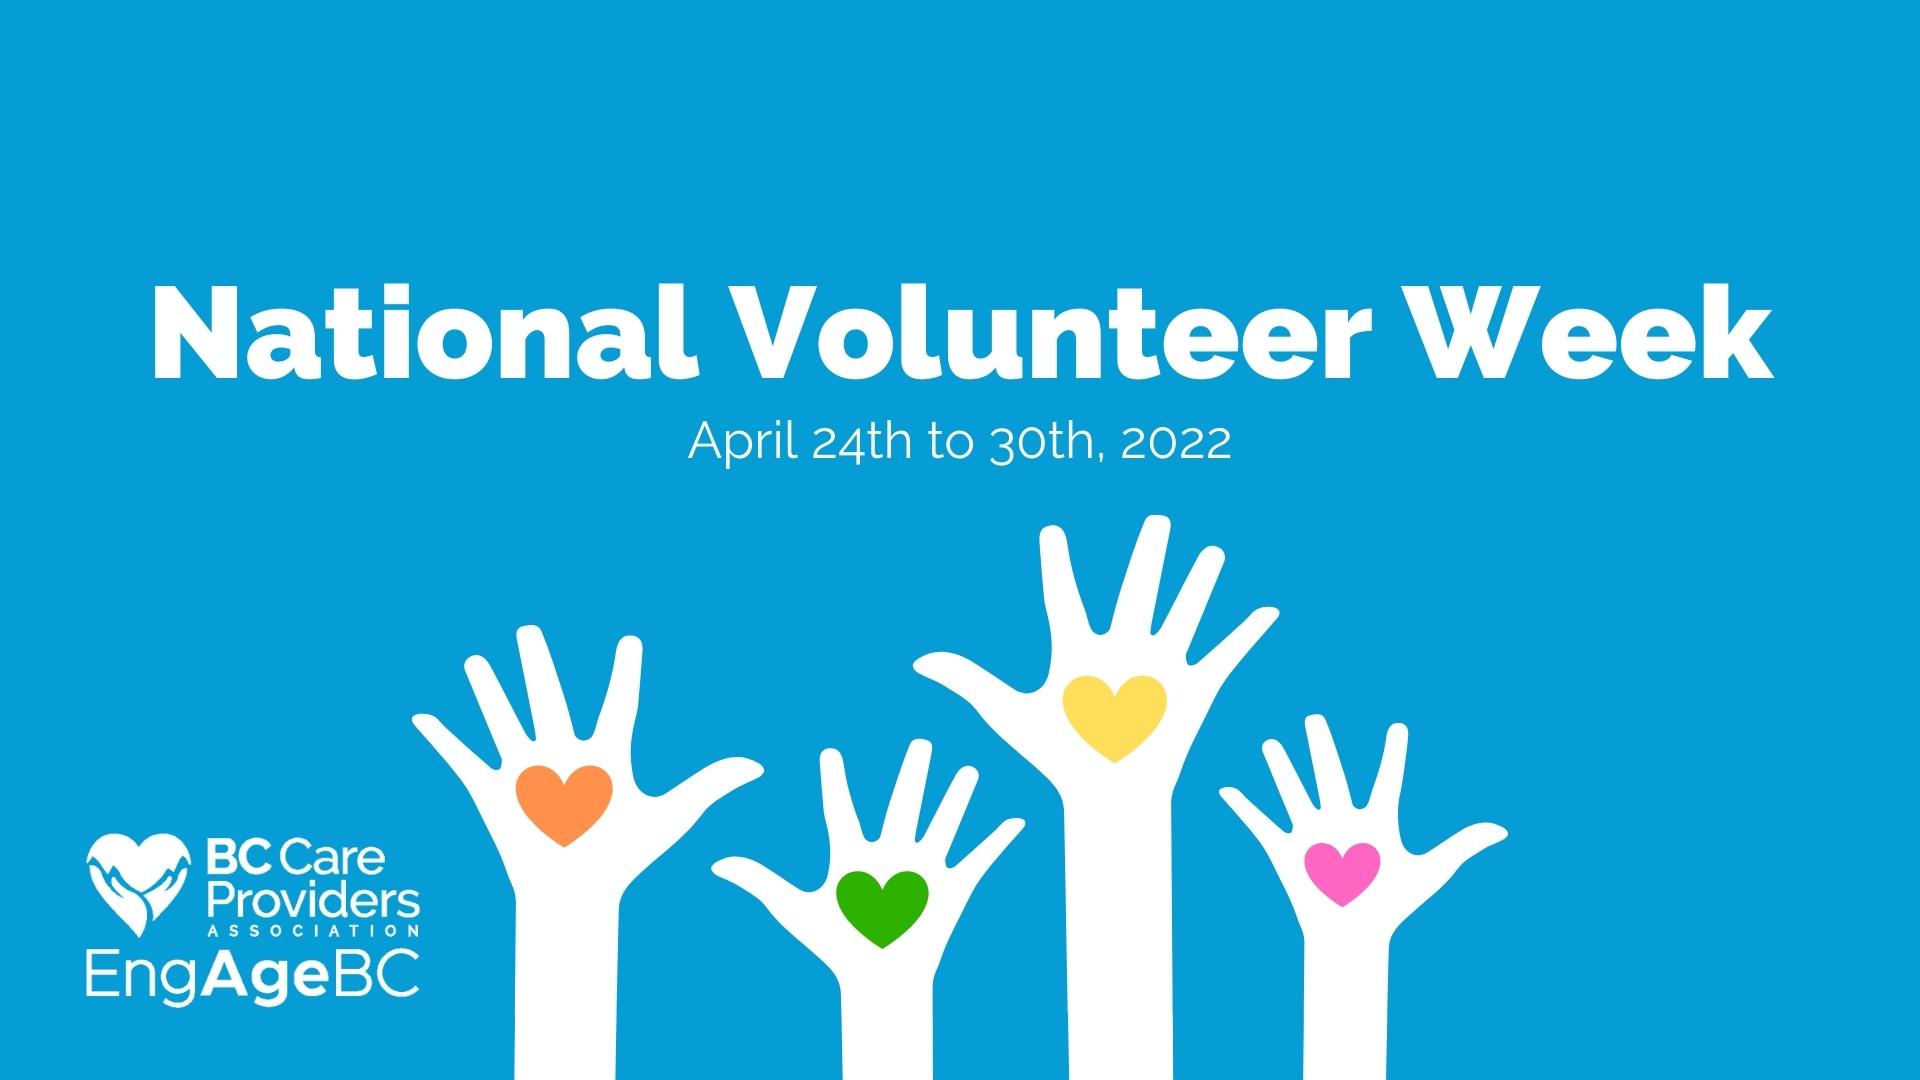 Celebrating the sector’s volunteers during National Volunteer Week!